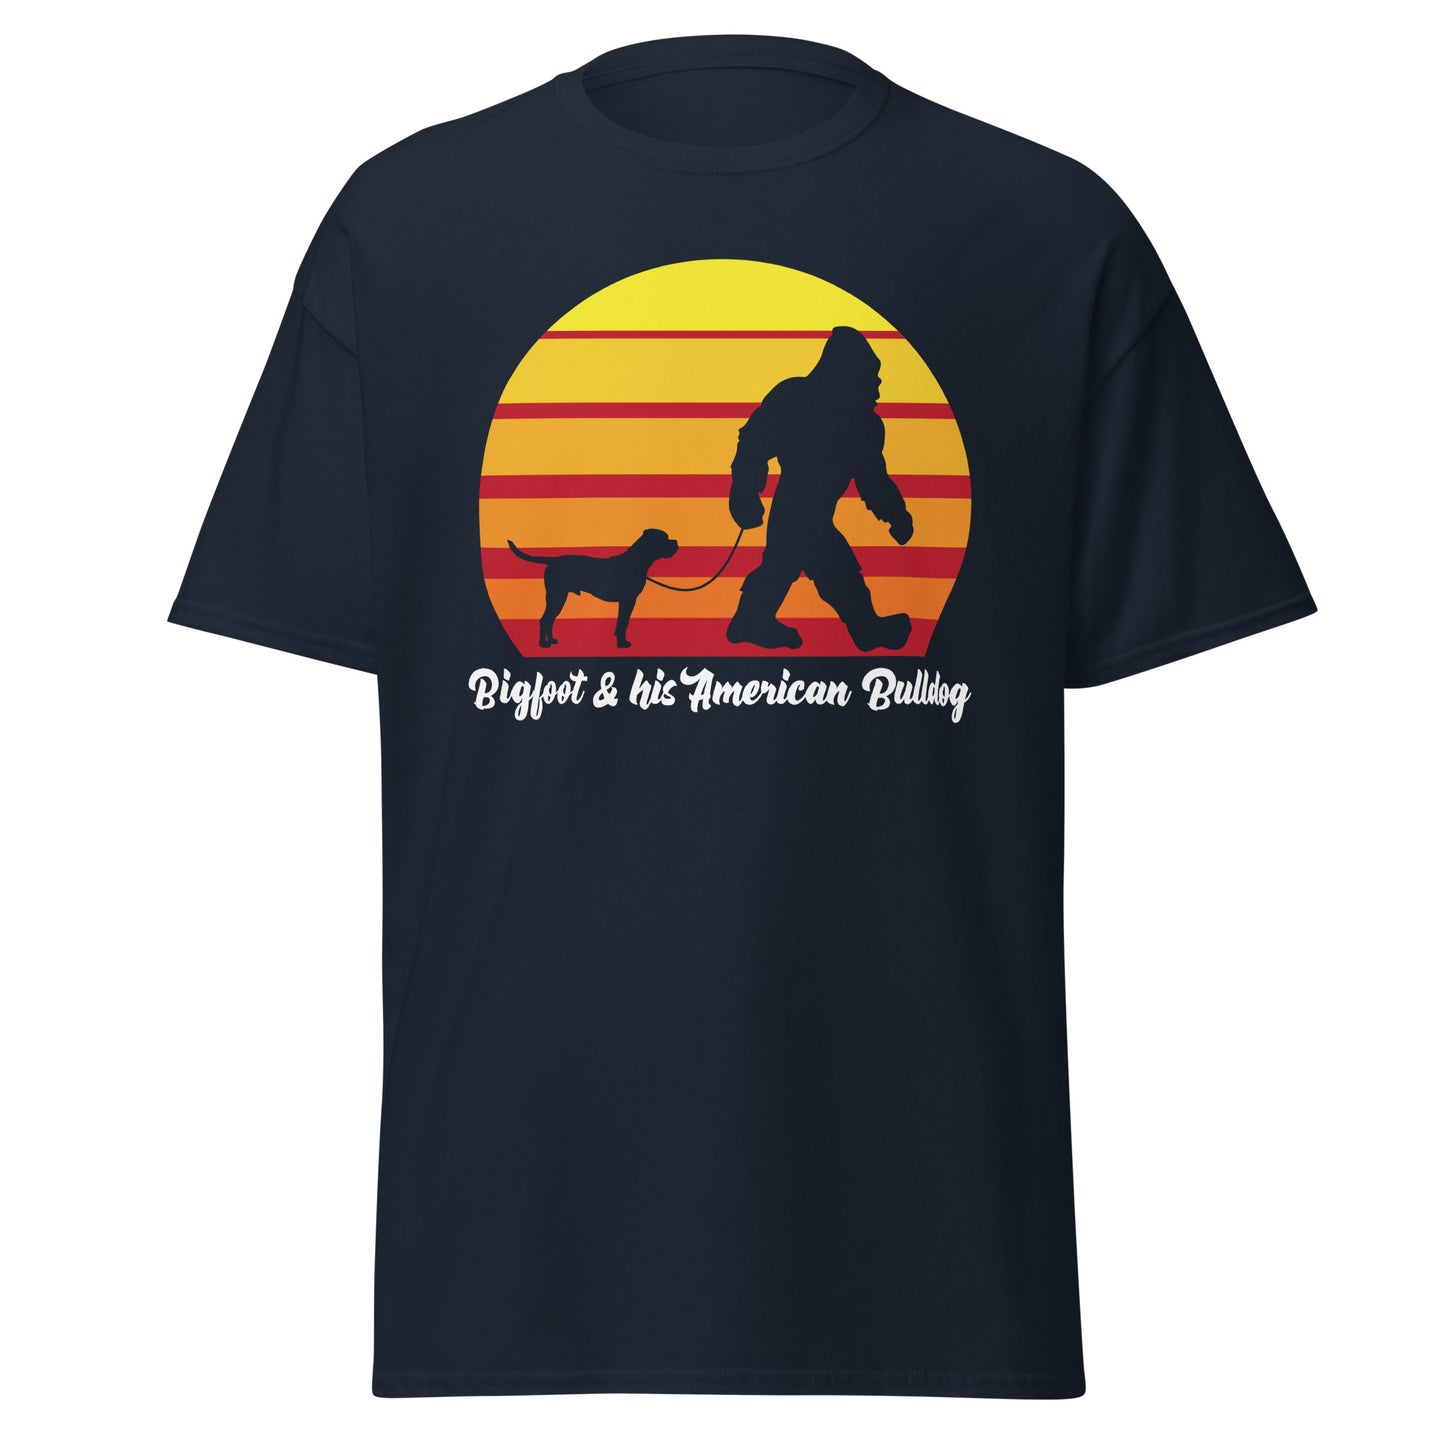 Big foot and his American Bulldog men’s navy t-shirt by Dog Artistry.